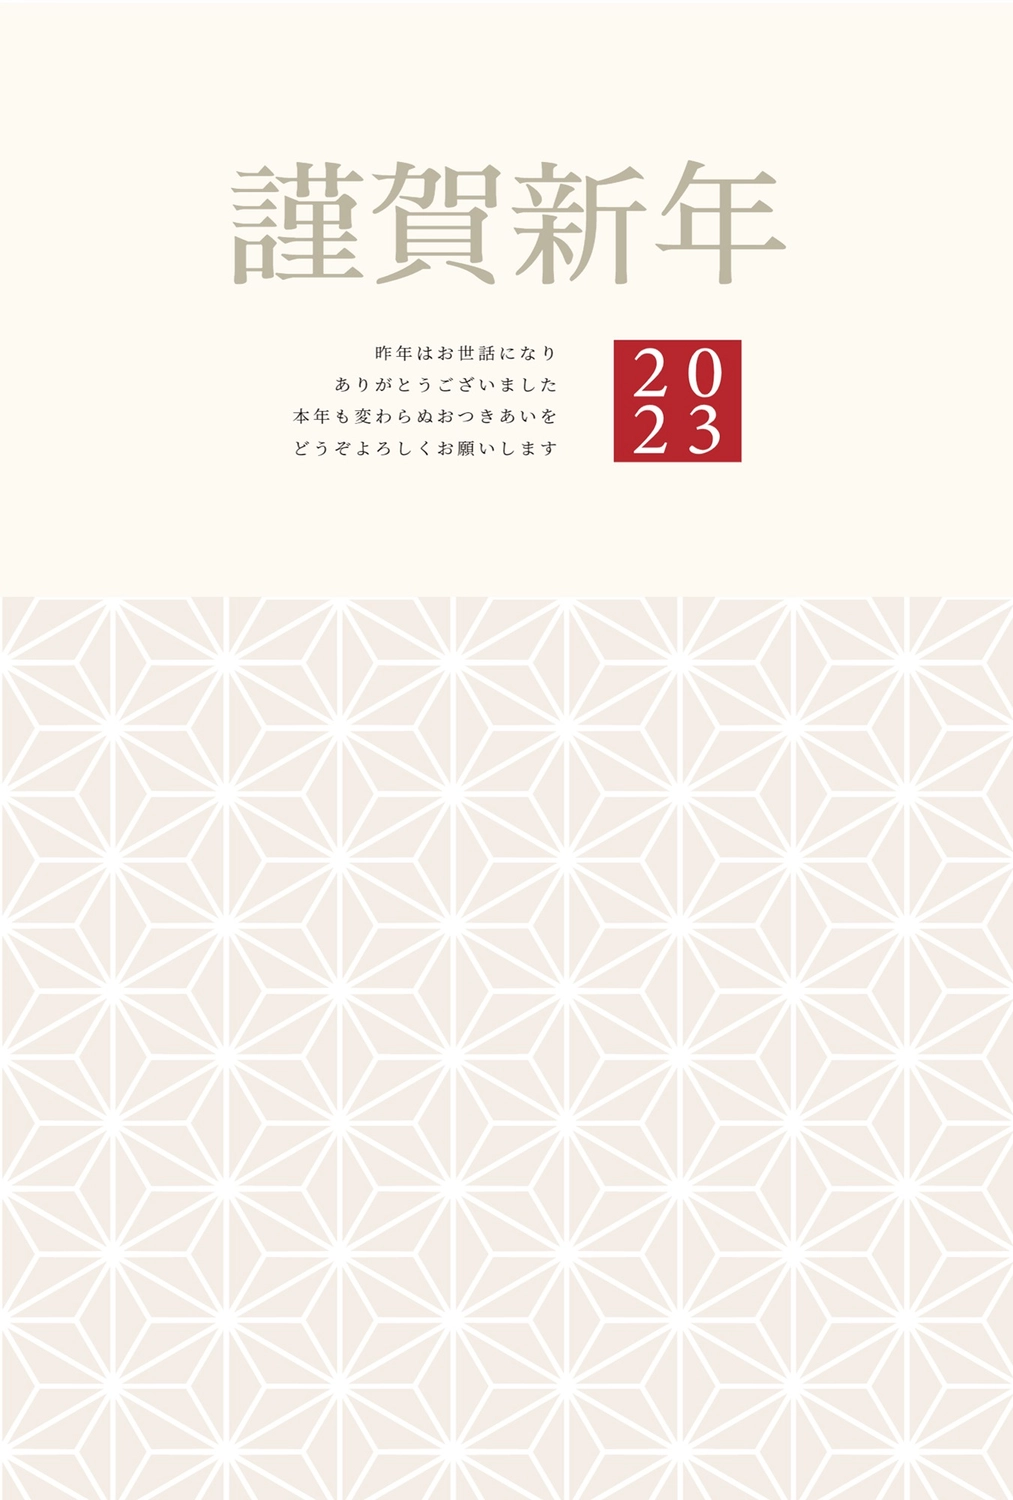 麻の葉文様の年賀状, greetings, Mature, hemp cloth pattern, New Year Card template